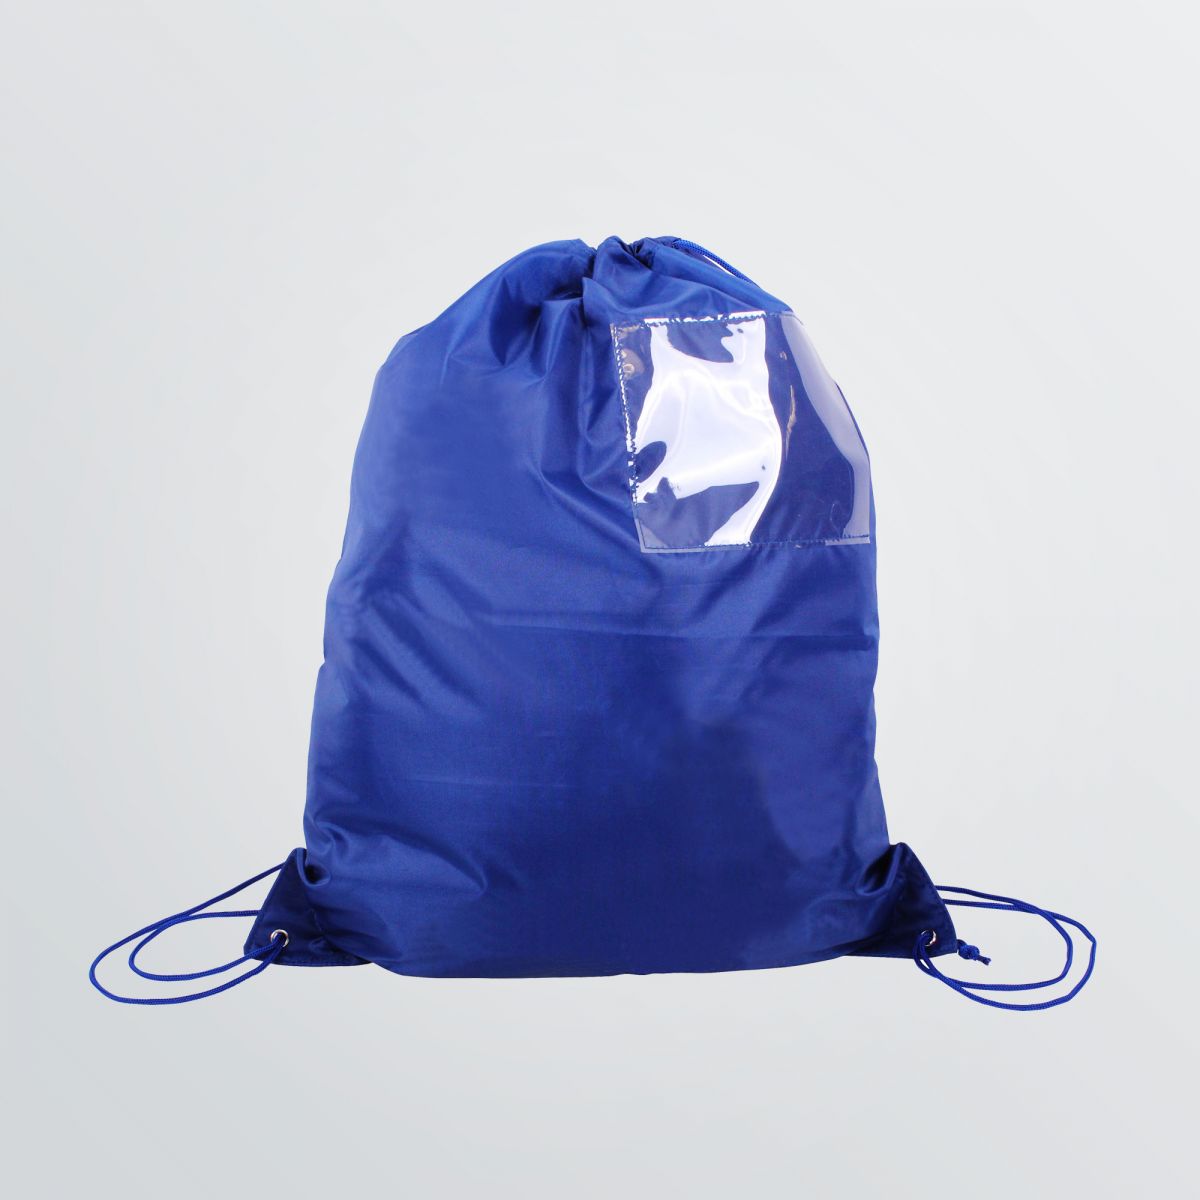 Individualisierbarer Gymbag Display mit Einschubfach - Produktbeispiel blau